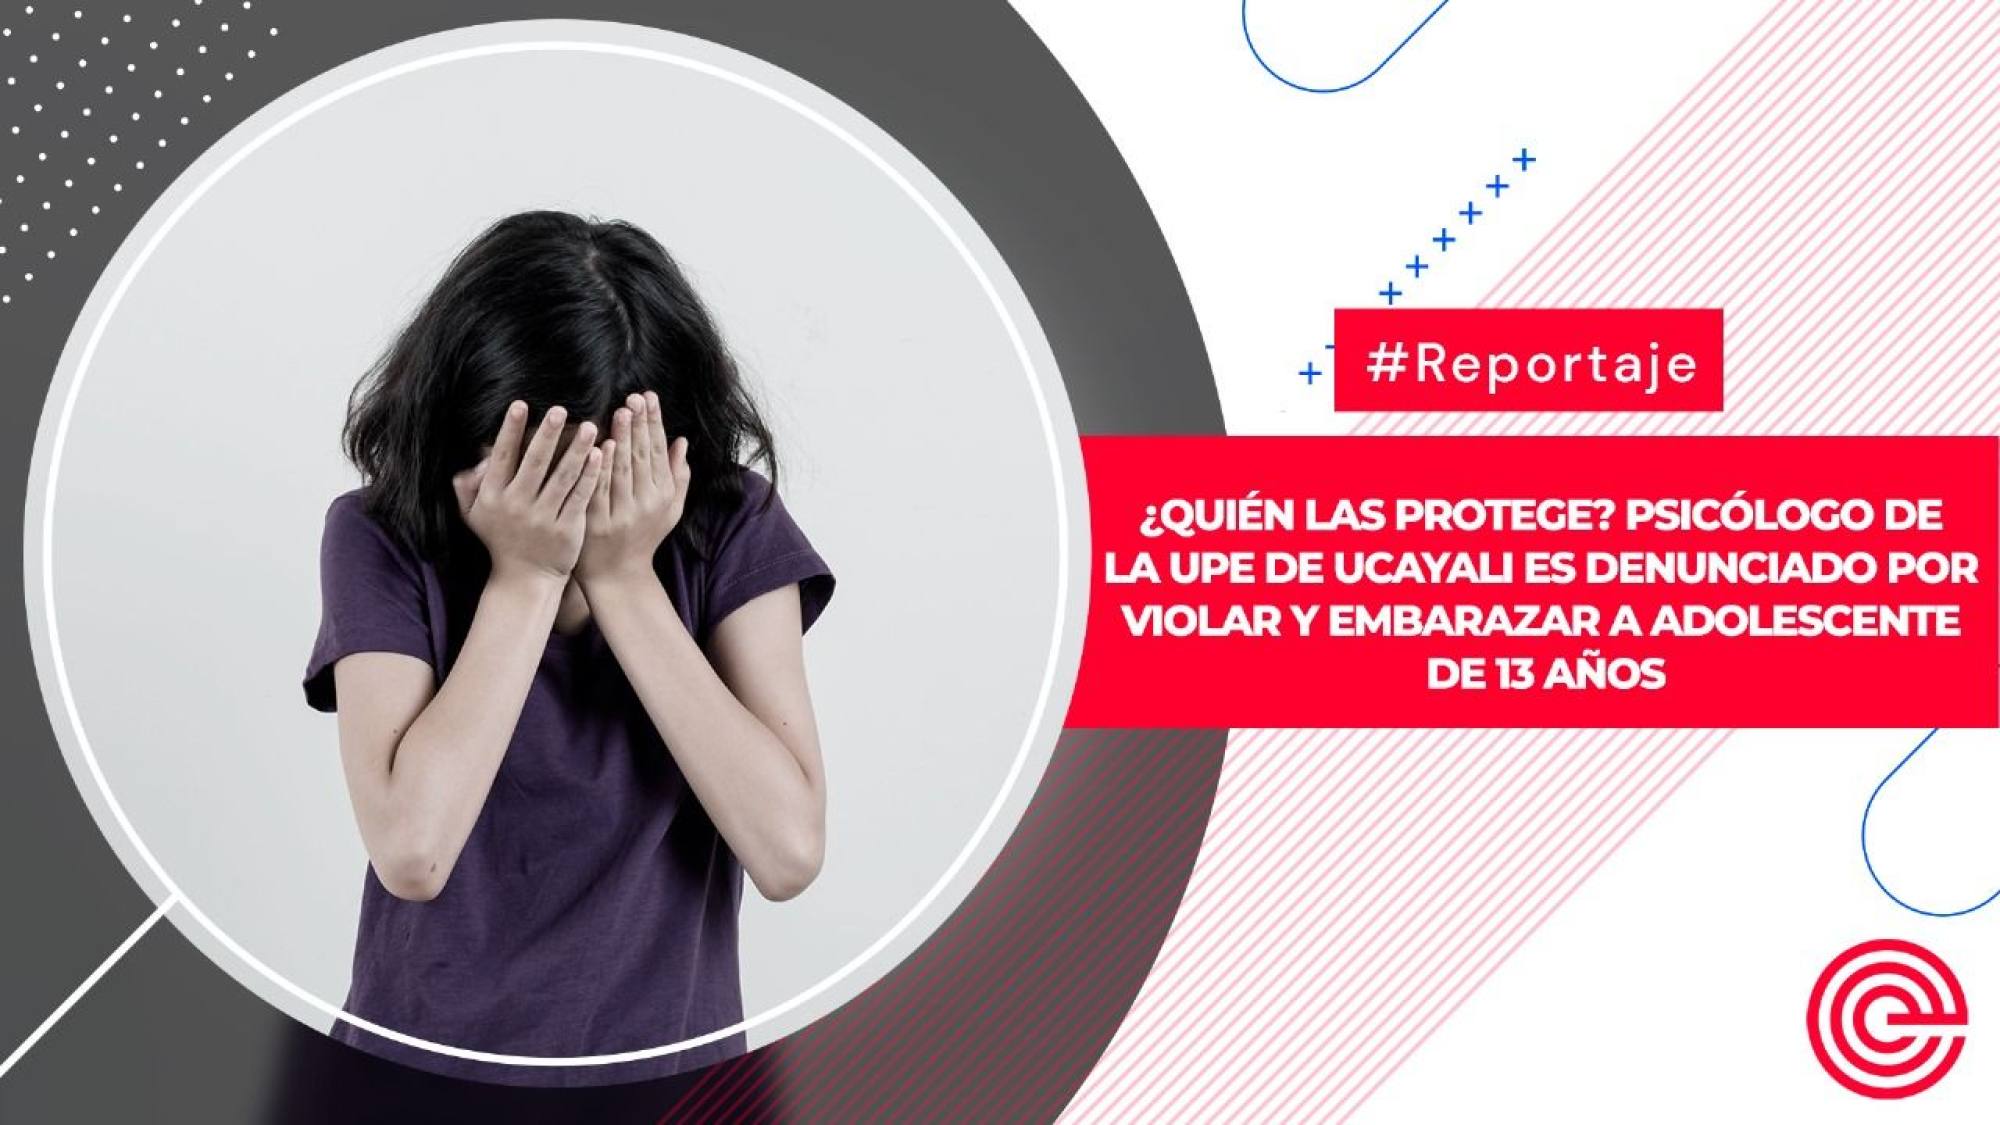 ¿Quién las protege? Psicólogo de la UPE de Ucayali es denunciado por violar y embarazar a adolescente de 13 años, Epicentro TV